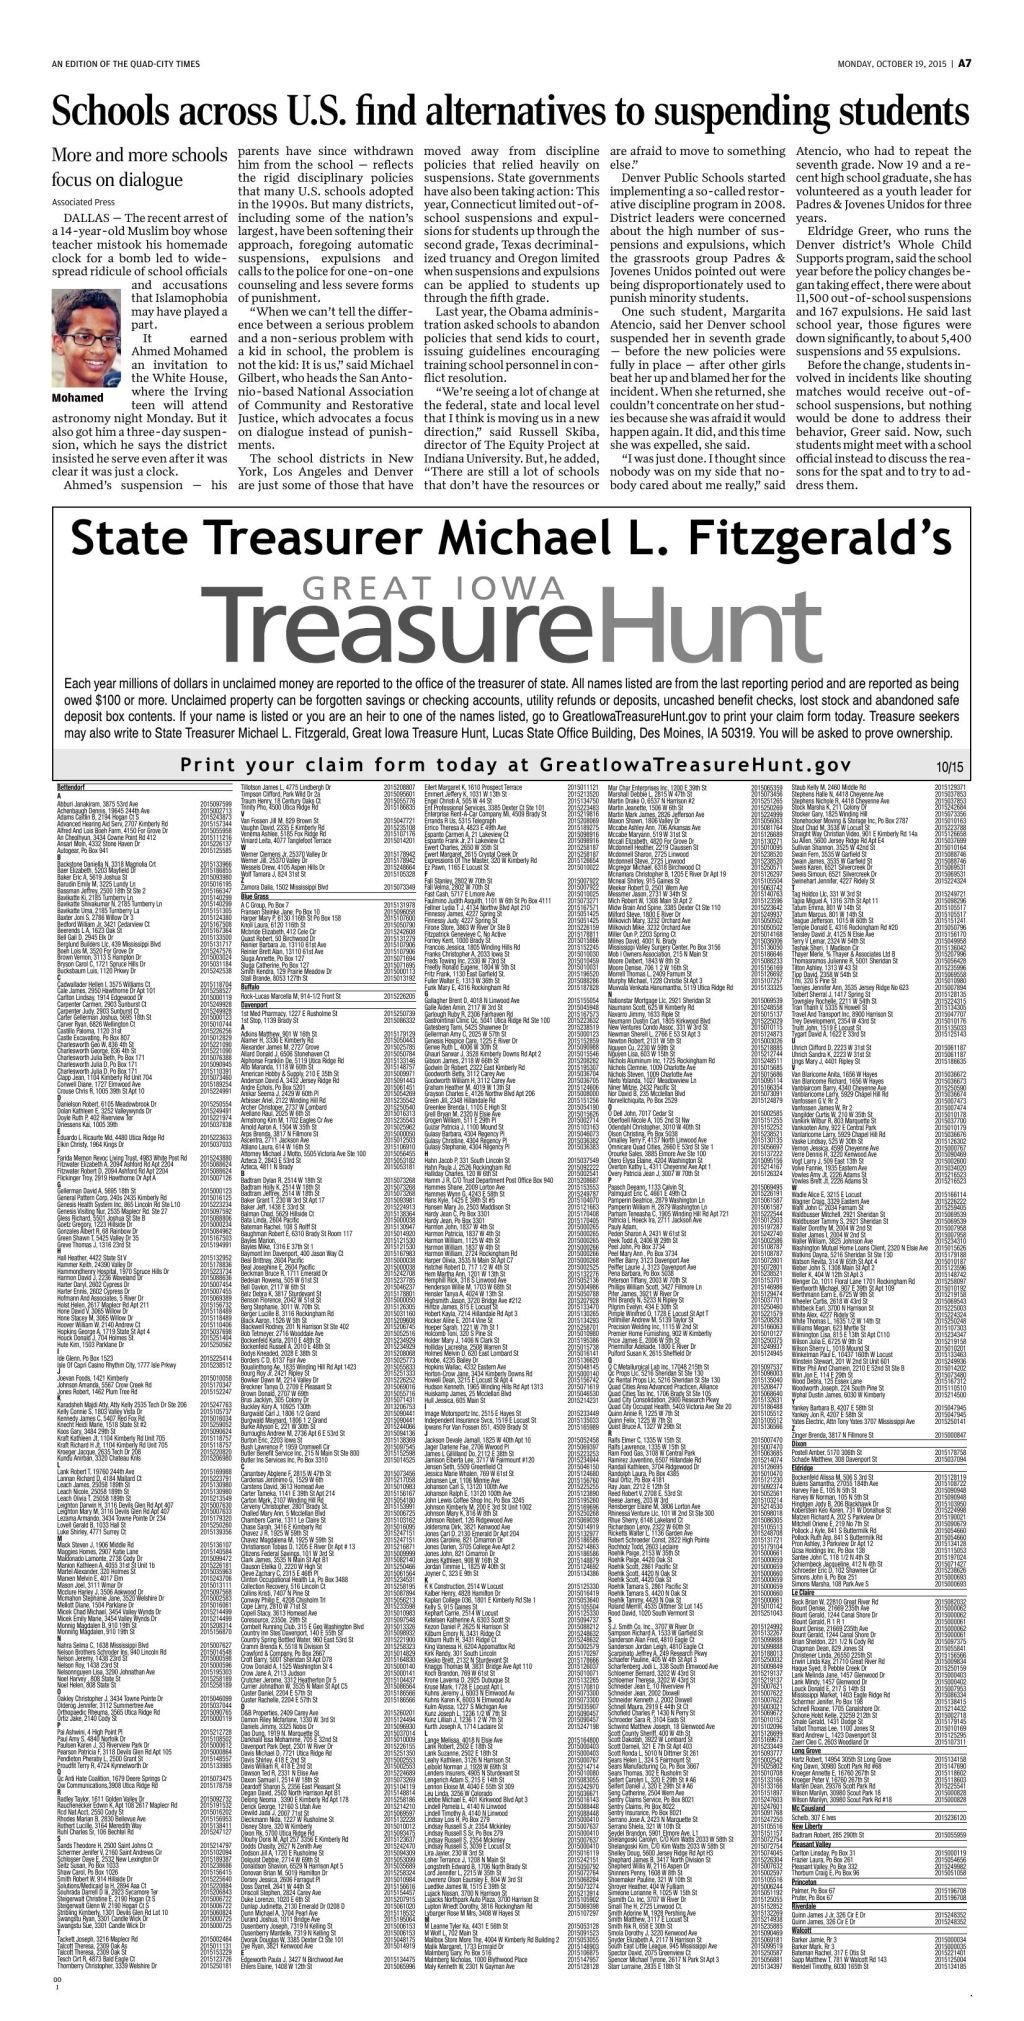 Great Iowa Treasure Hunt